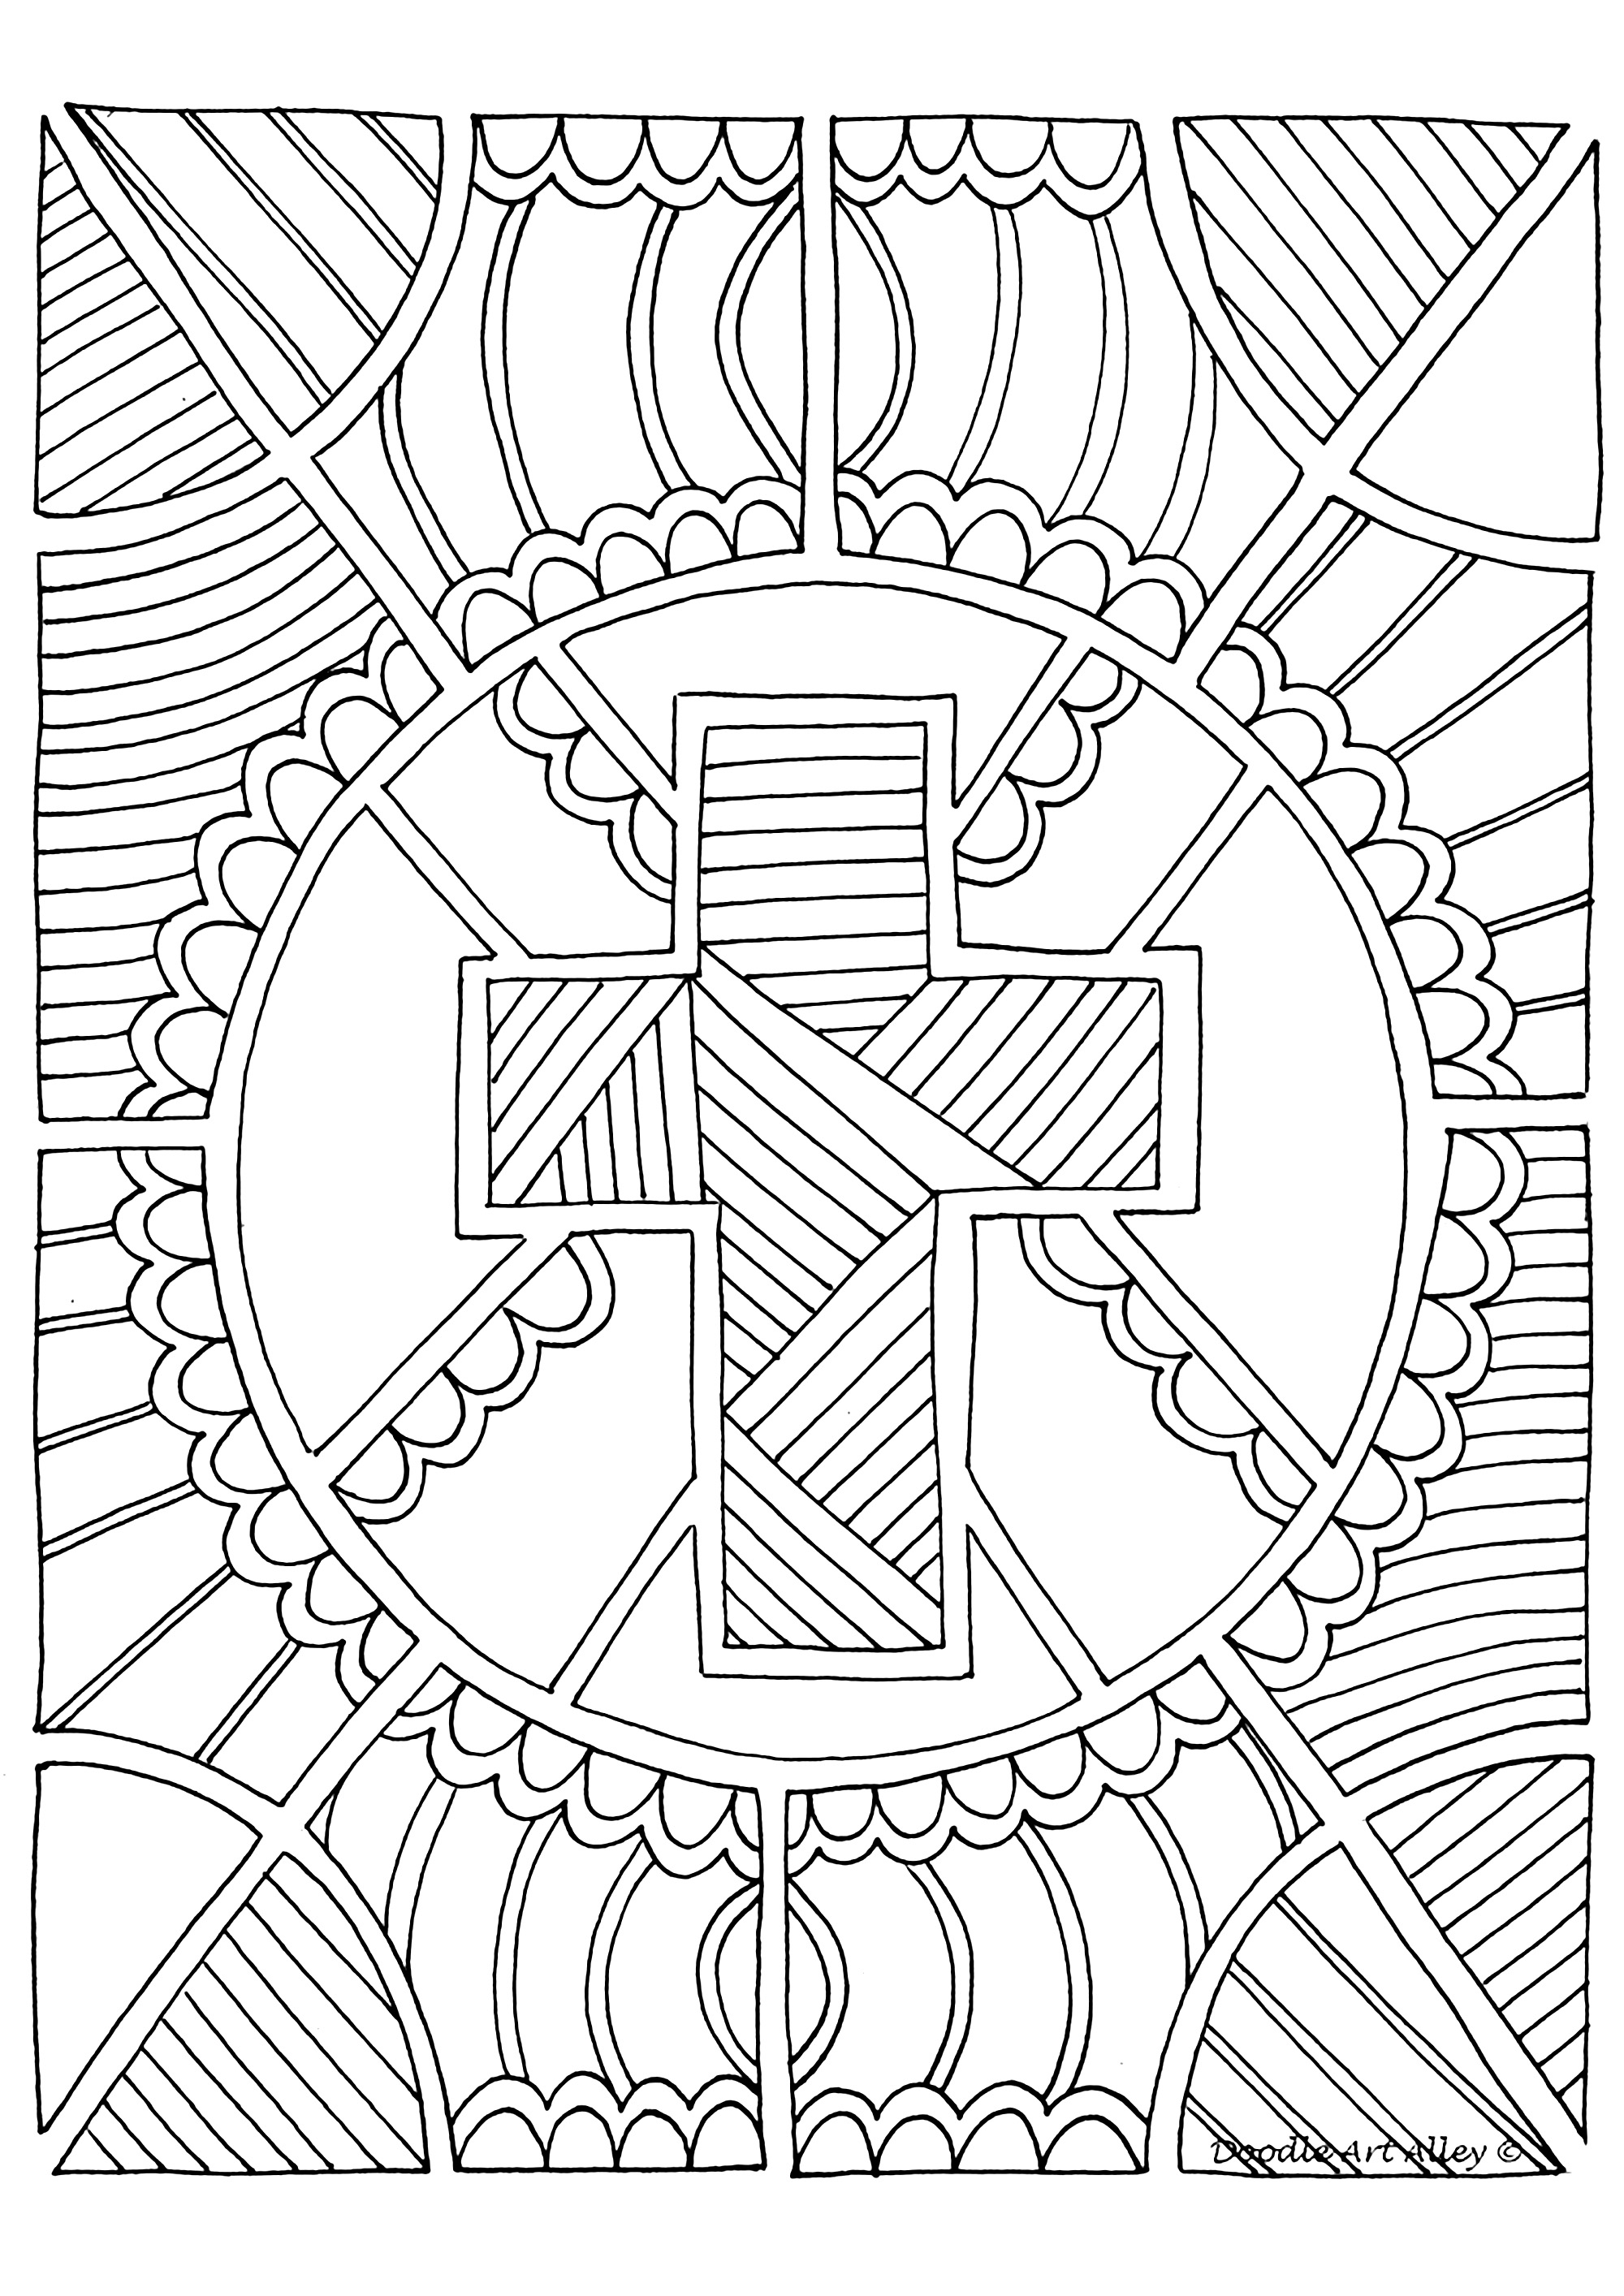 La Cruz, símbolo de Cristiandad. Un diseño con muchos motivos para colorear